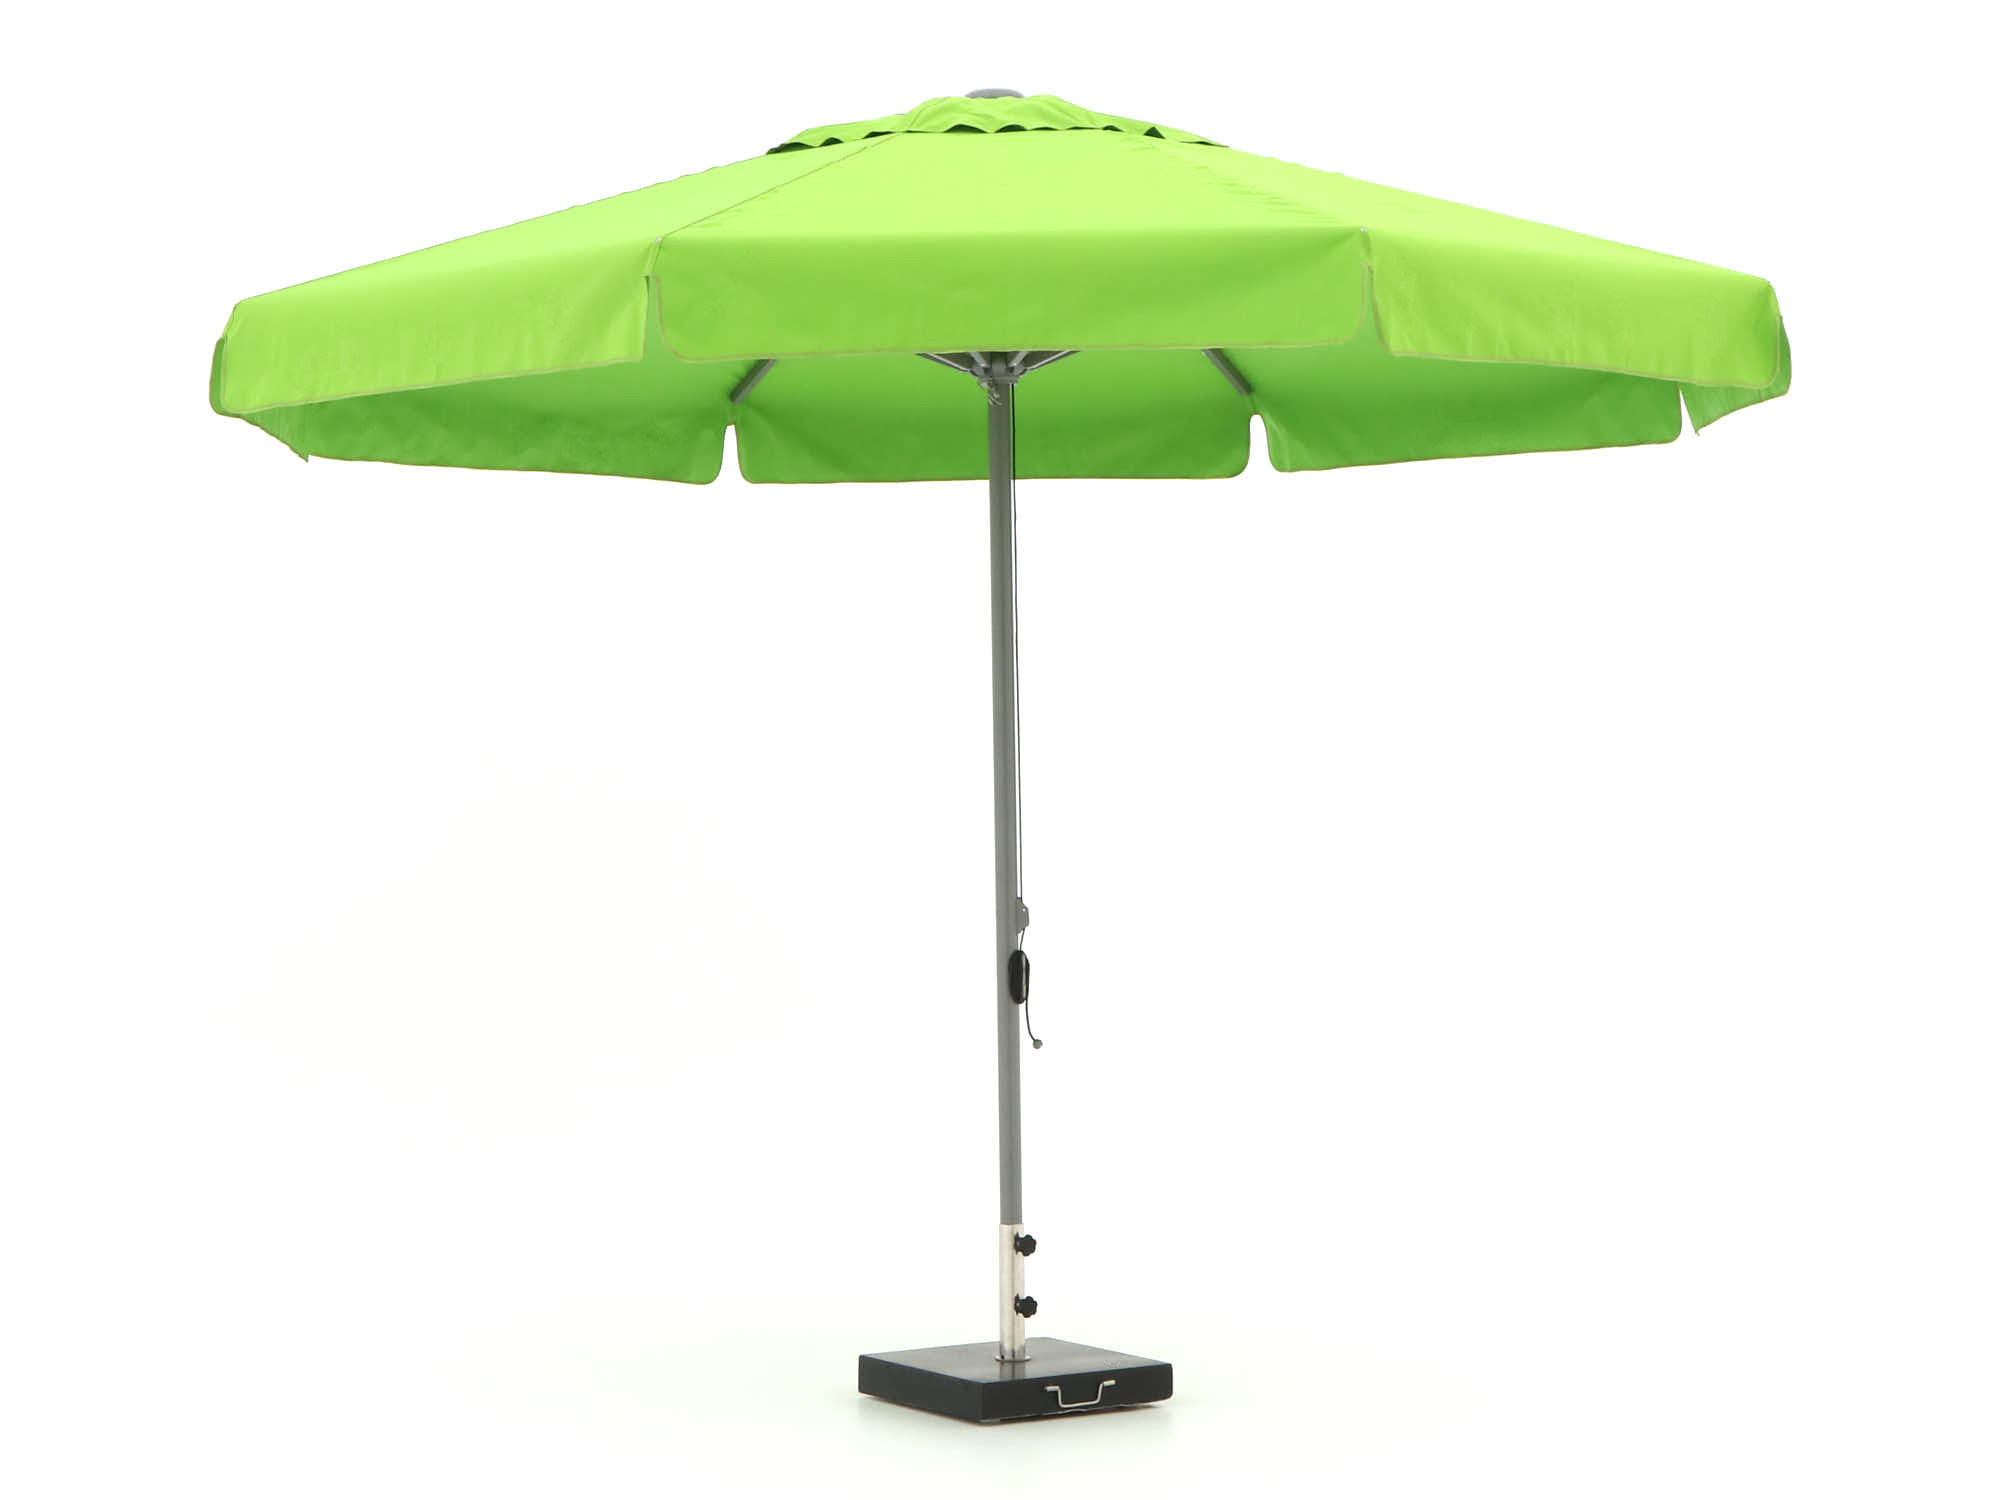 Shadowline Bonaire parasol ø 350cm - Laagste prijsgarantie!